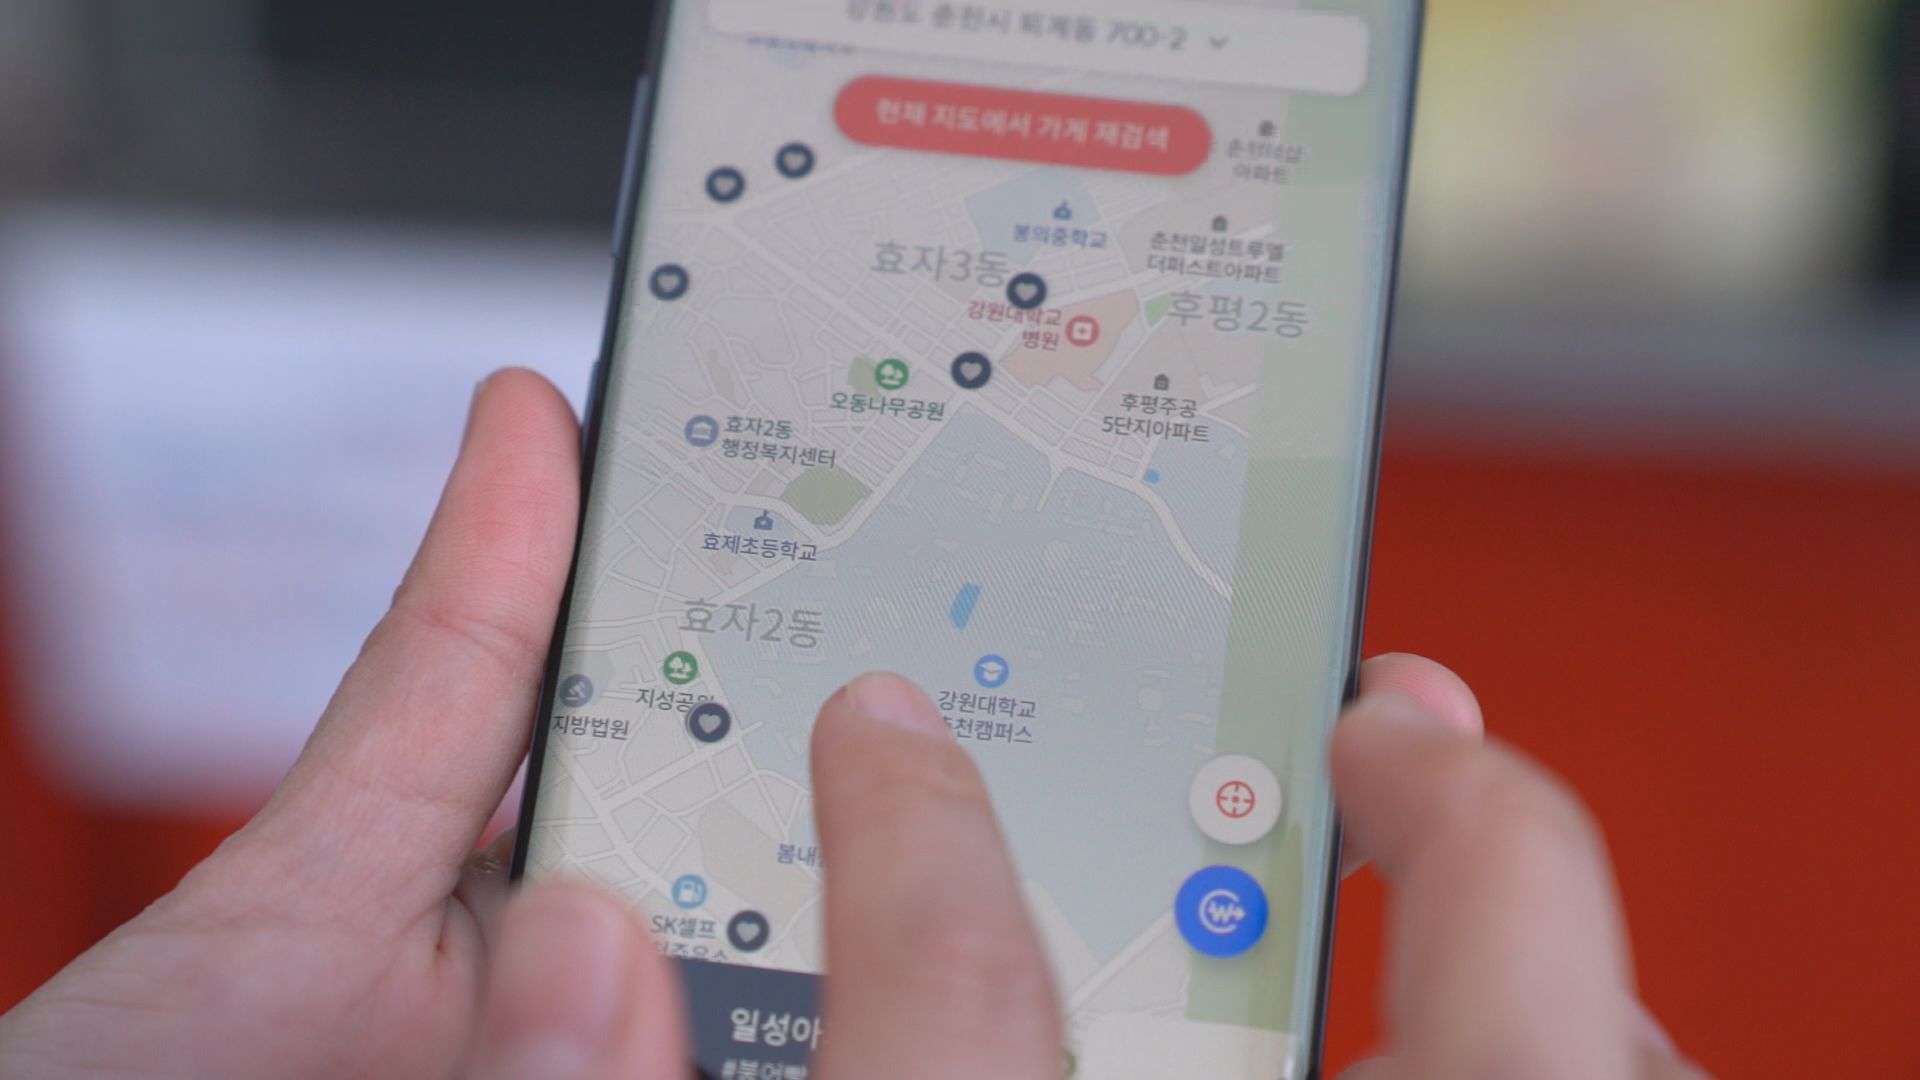 ‘가슴속3천원’ 앱에는 길거리 음식을 파는 노점의 위치가 지도에 표시되어 있다.